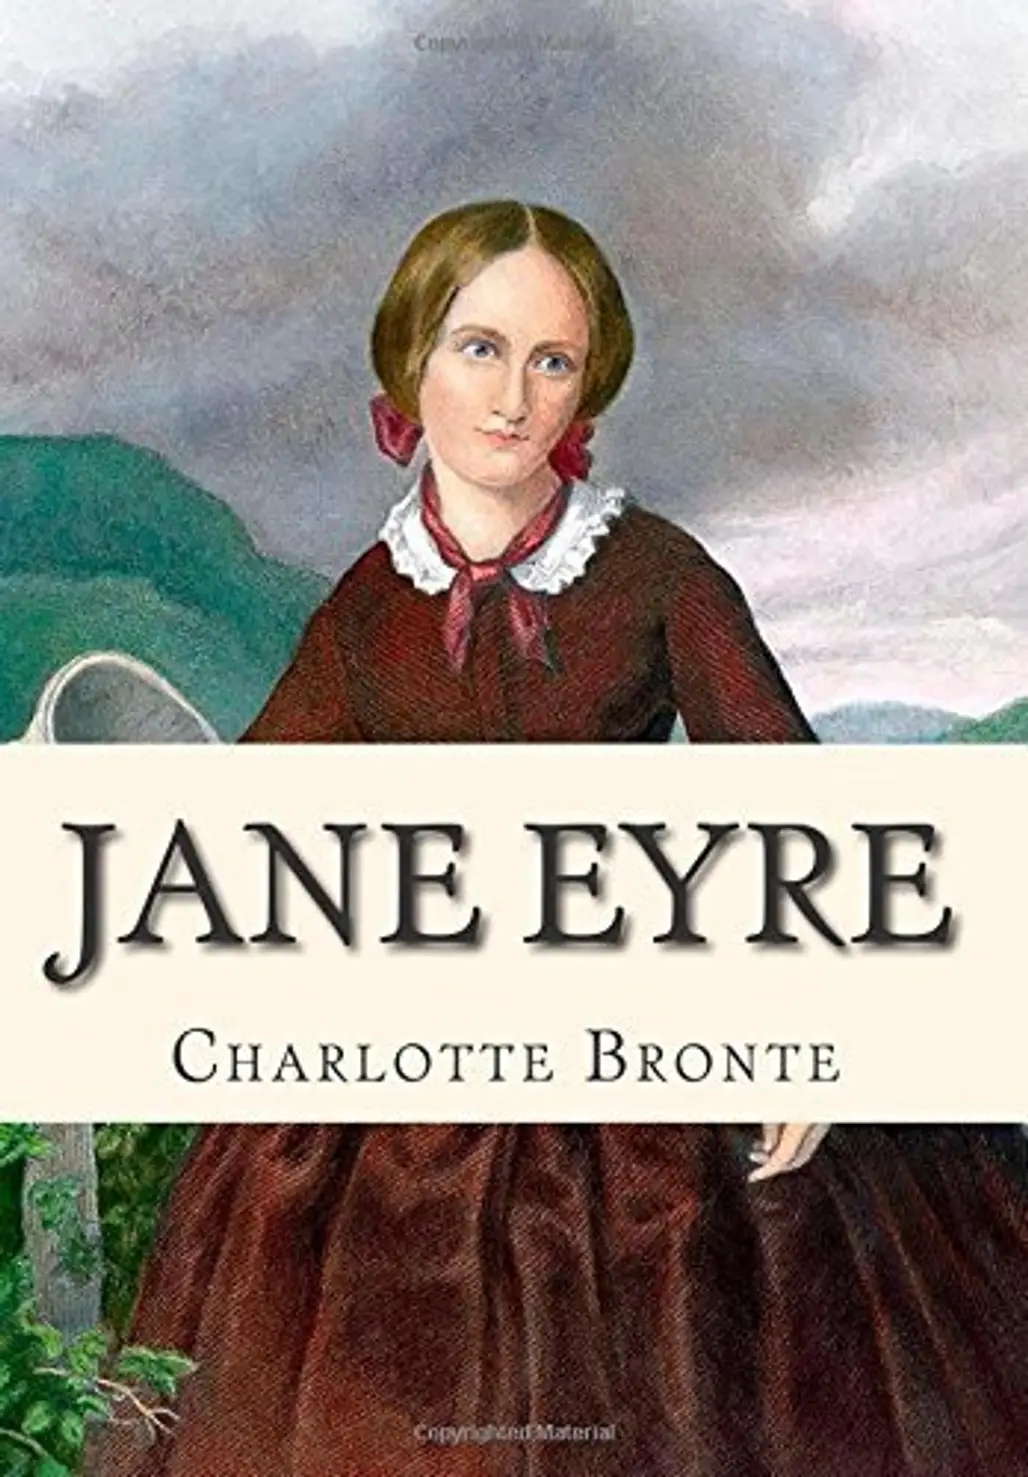 Jane Eyre – Charlotte Bronte